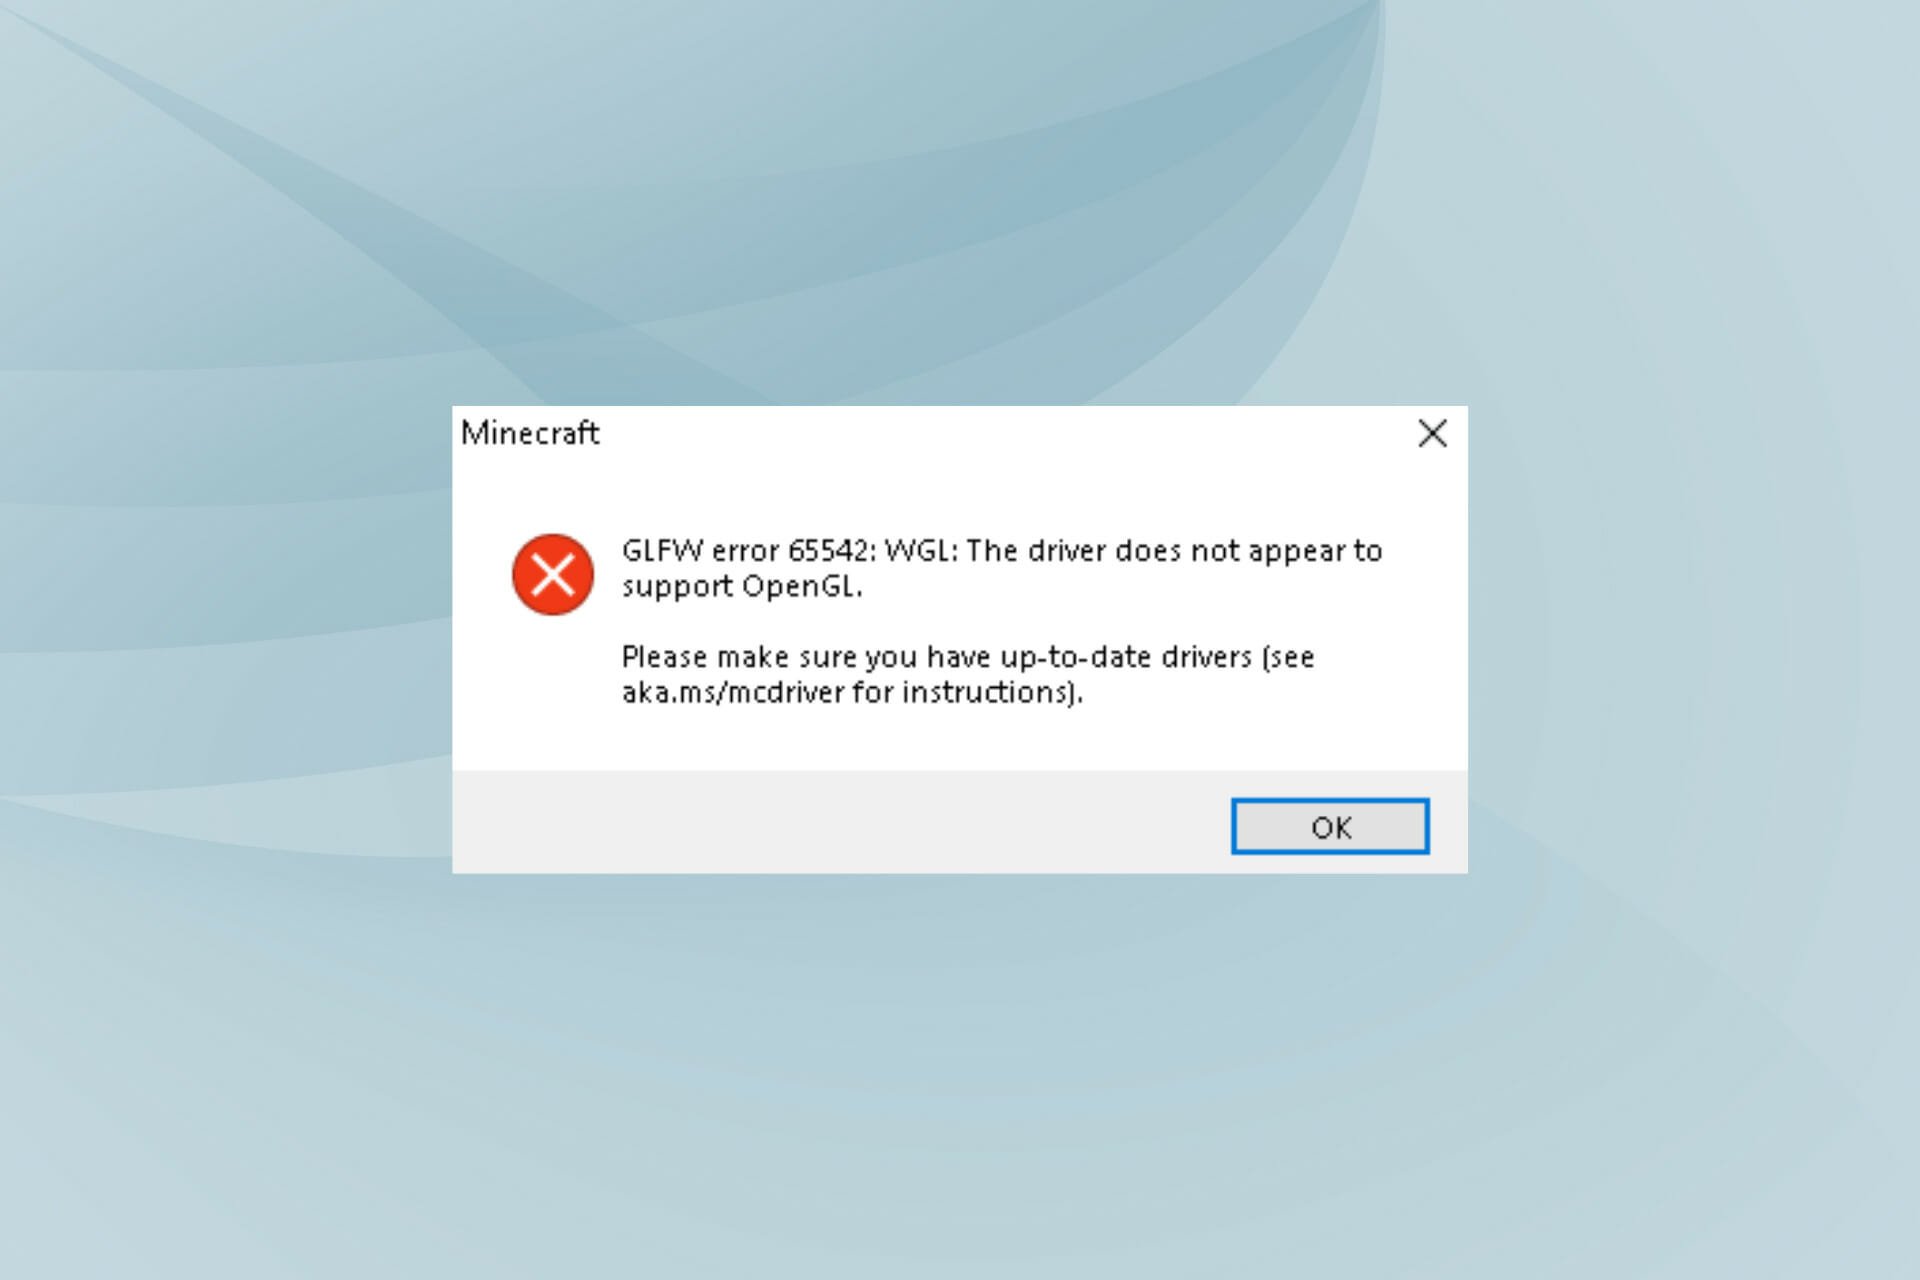 Fix glfw error 65542 in Minecraft